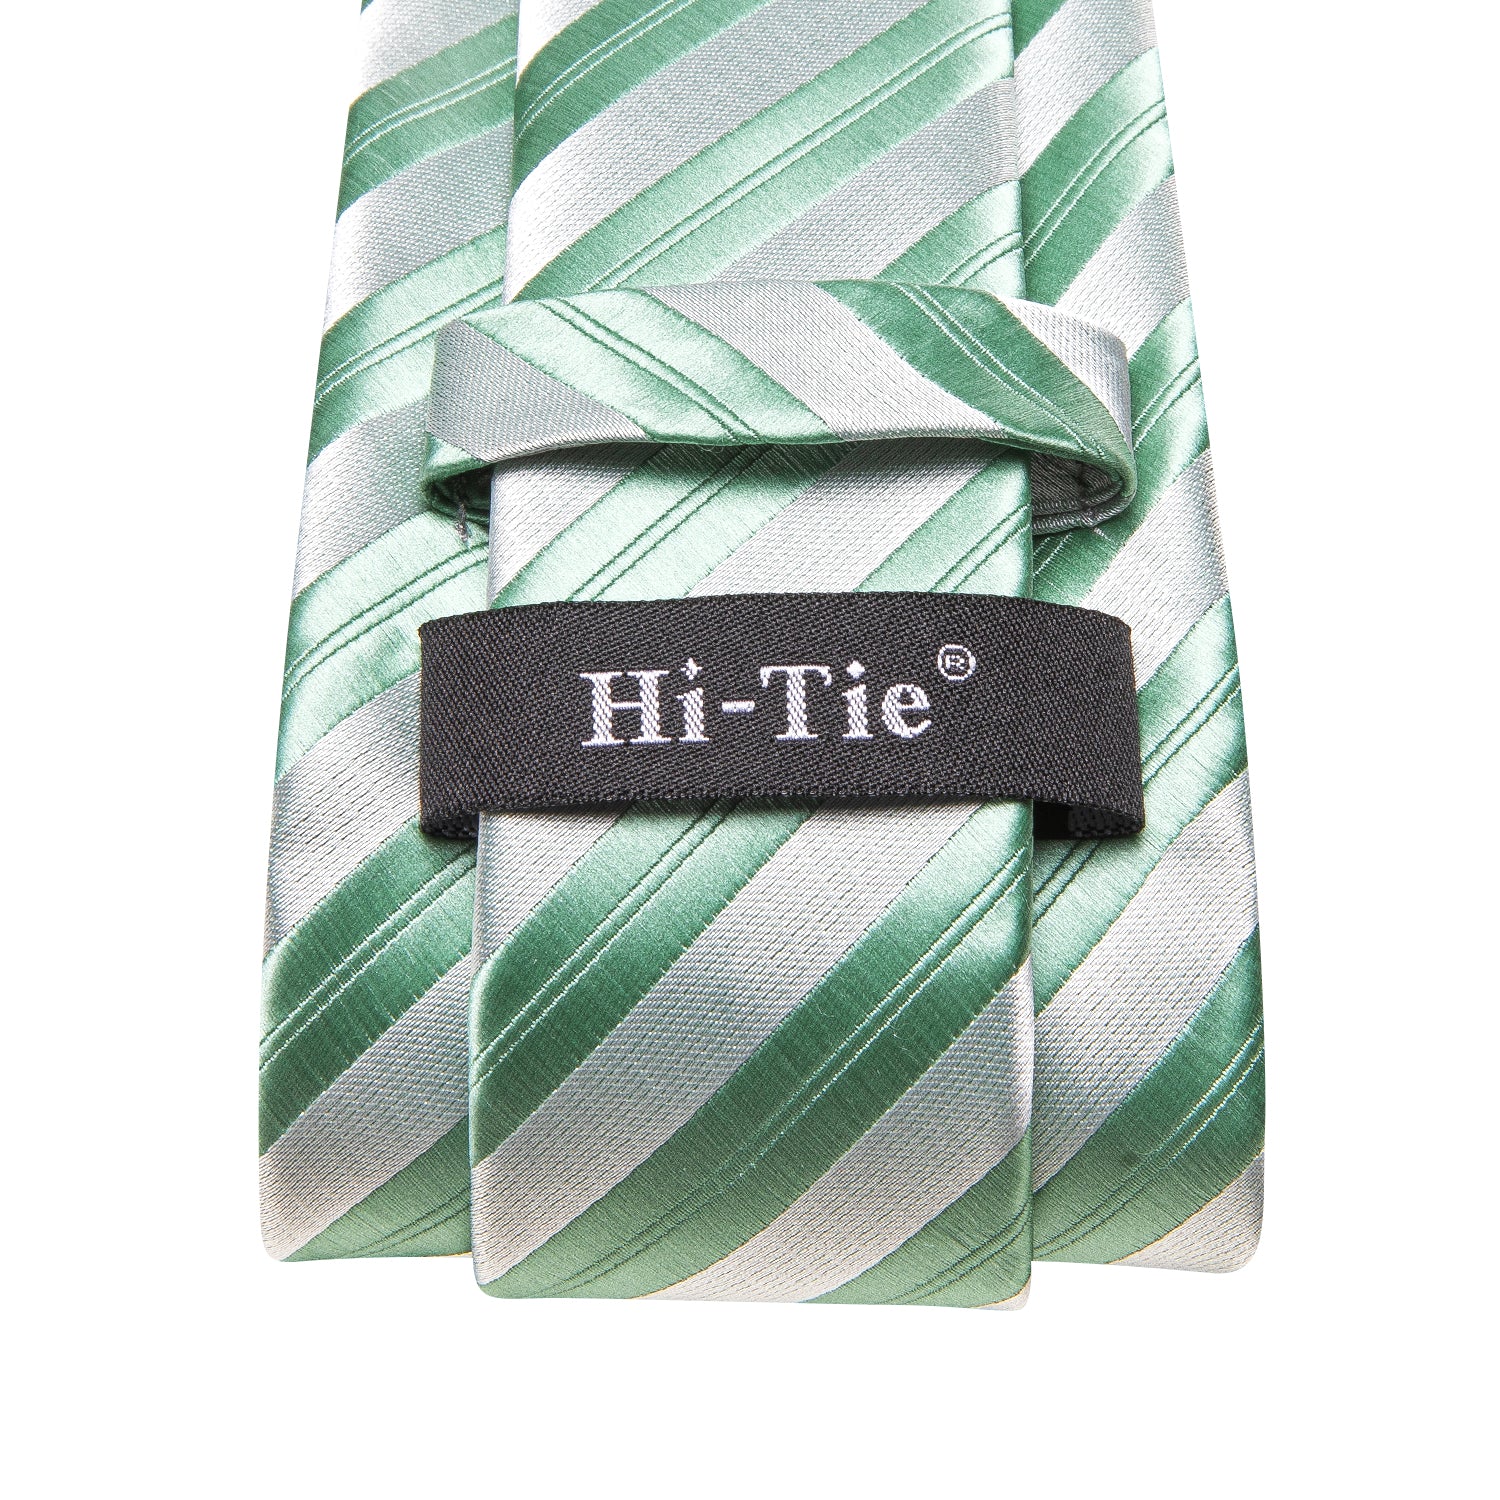 Green White Strip Tie Pocket Square Cufflinks Set